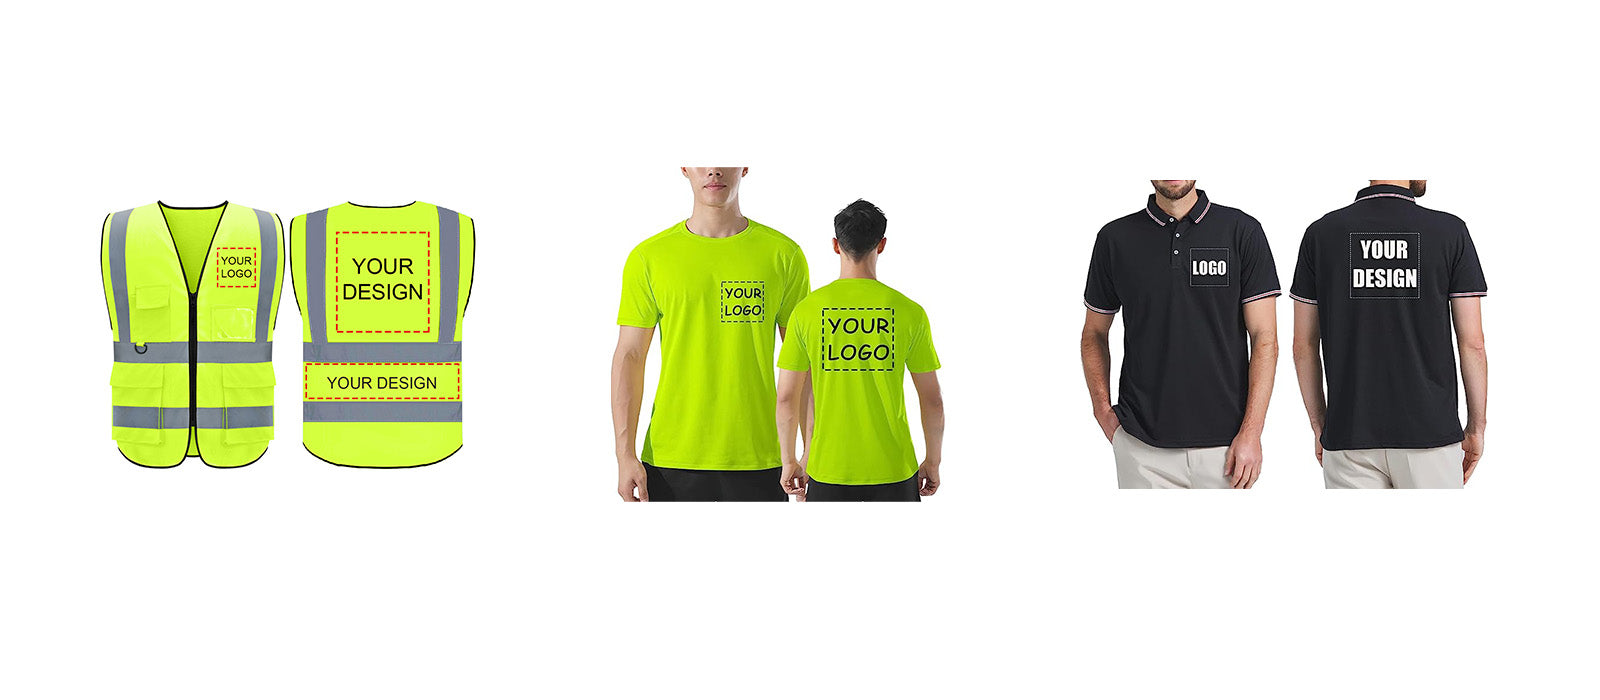 Free design logo custom vest T shirts form 1PC size S M L XL XXL